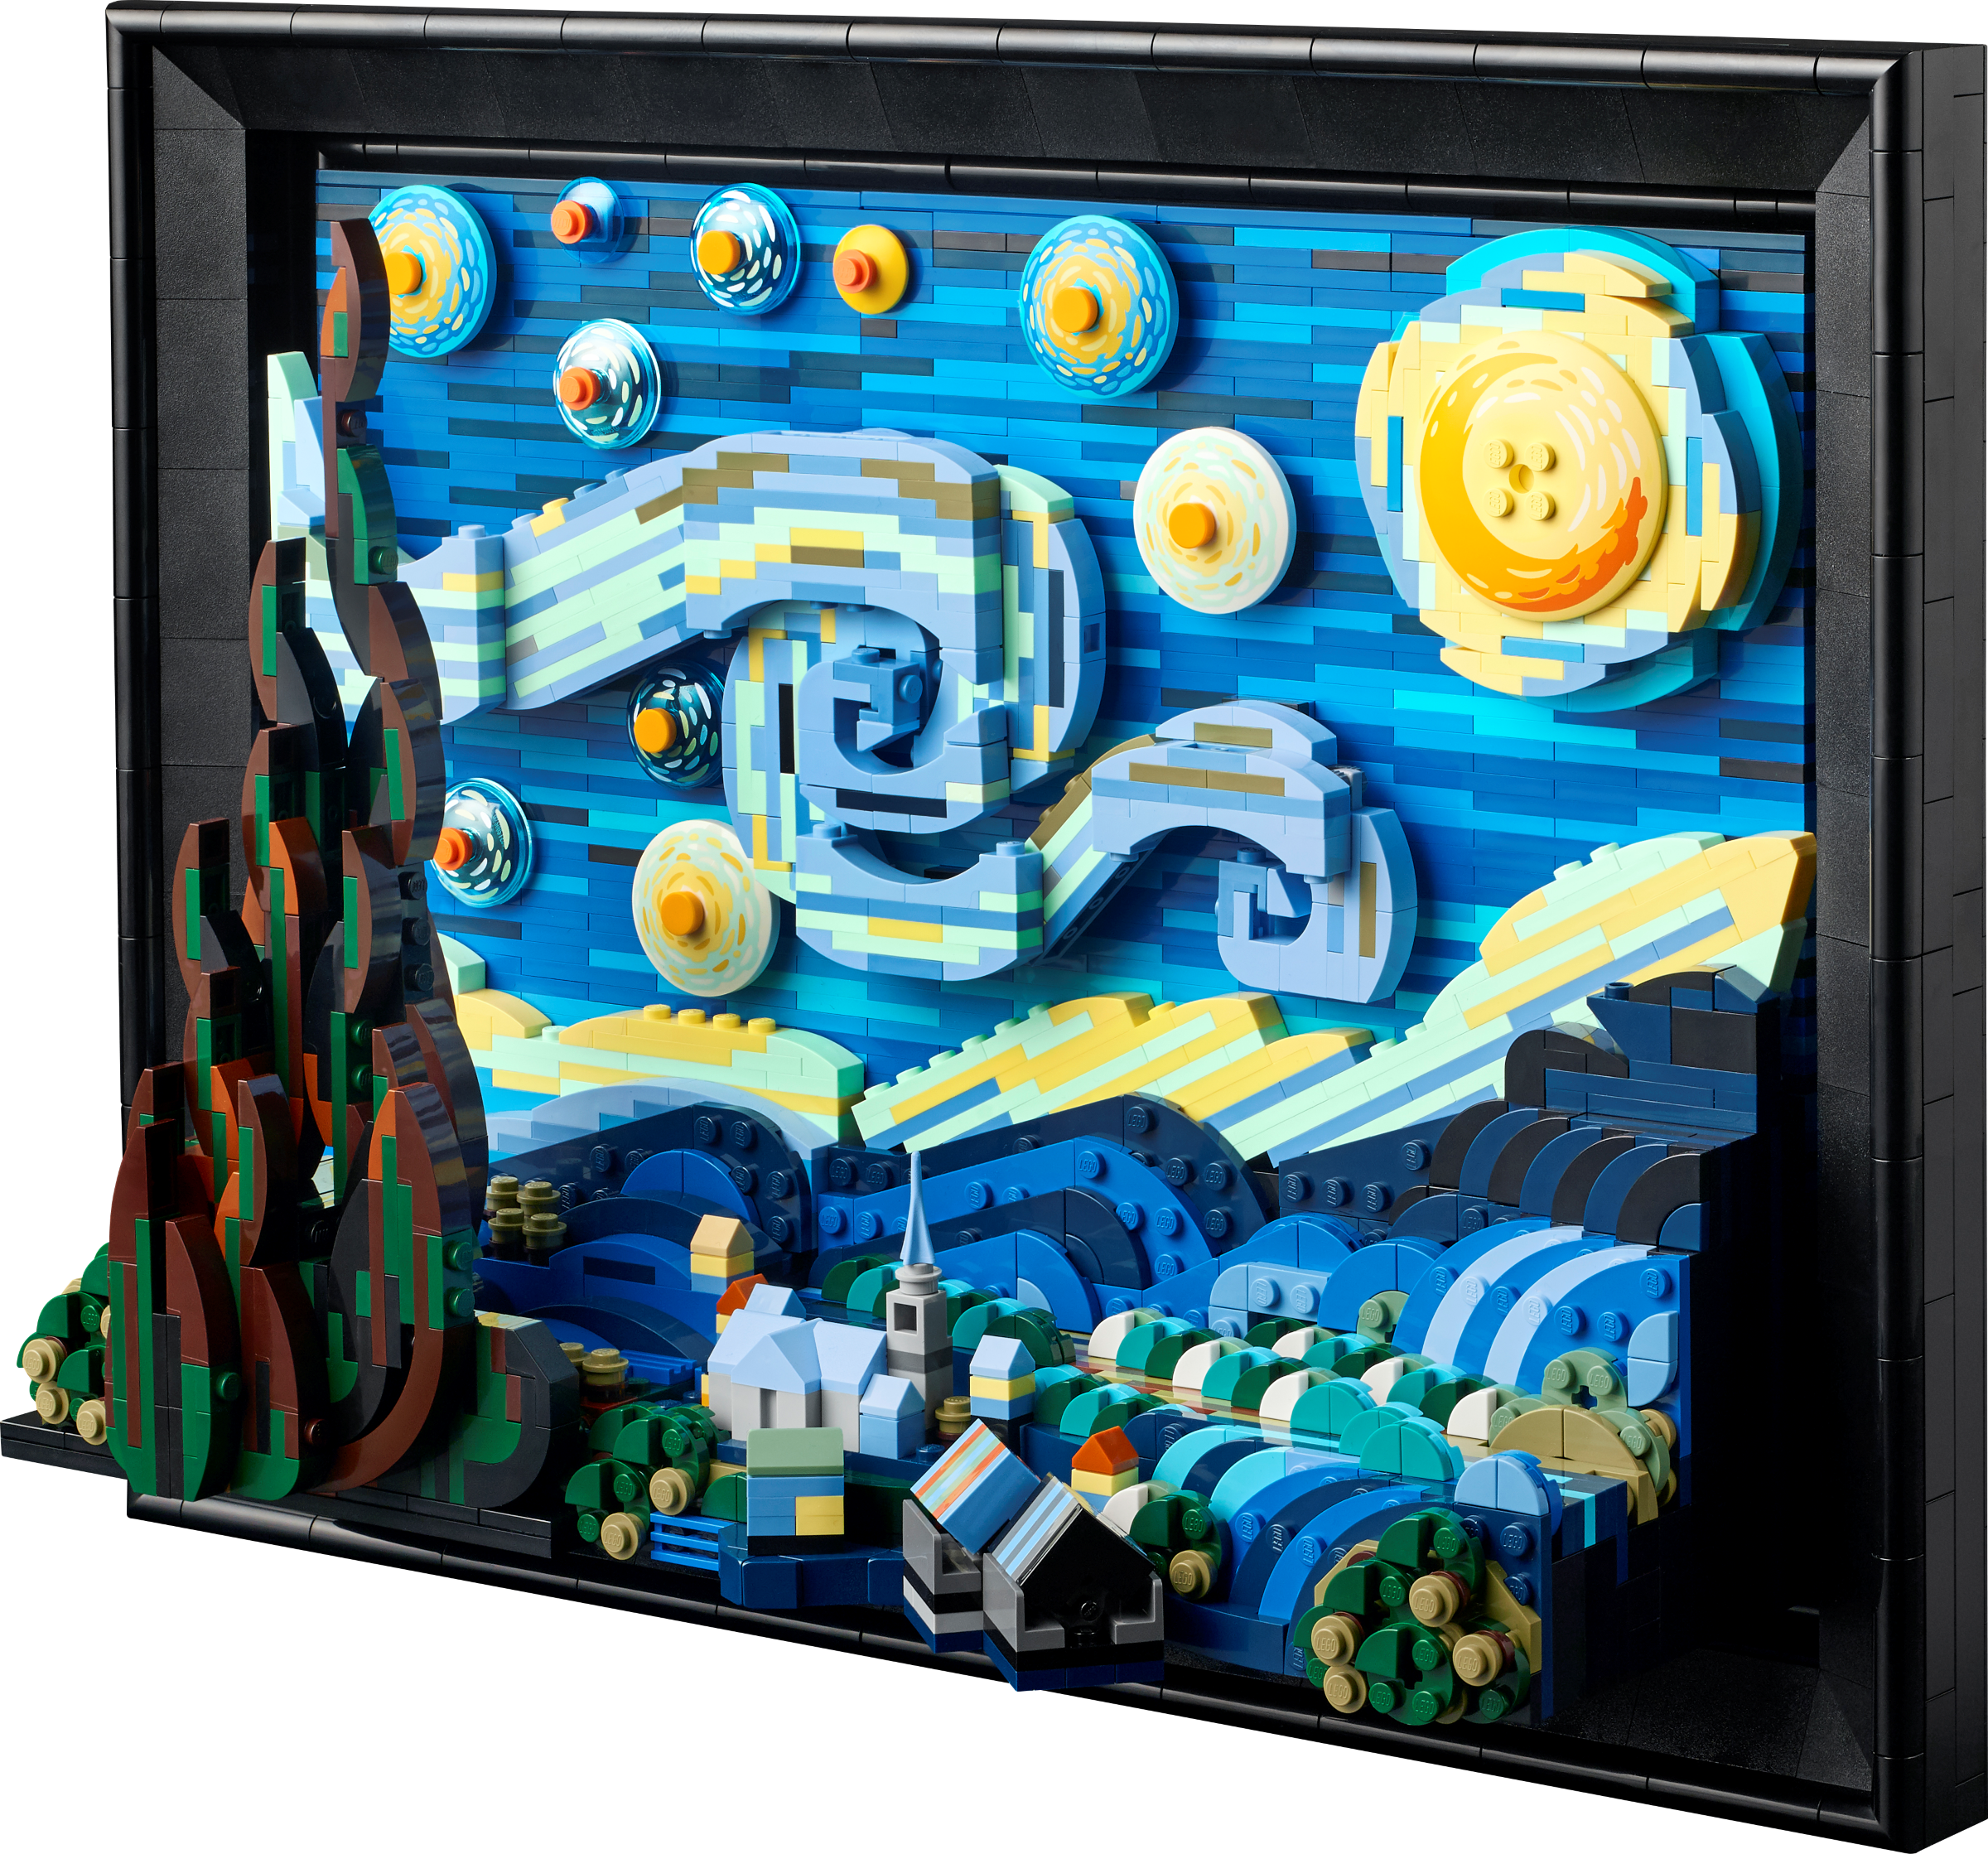 LEGO : reproduisez la toile « La nuit étoilée » de Van Gogh